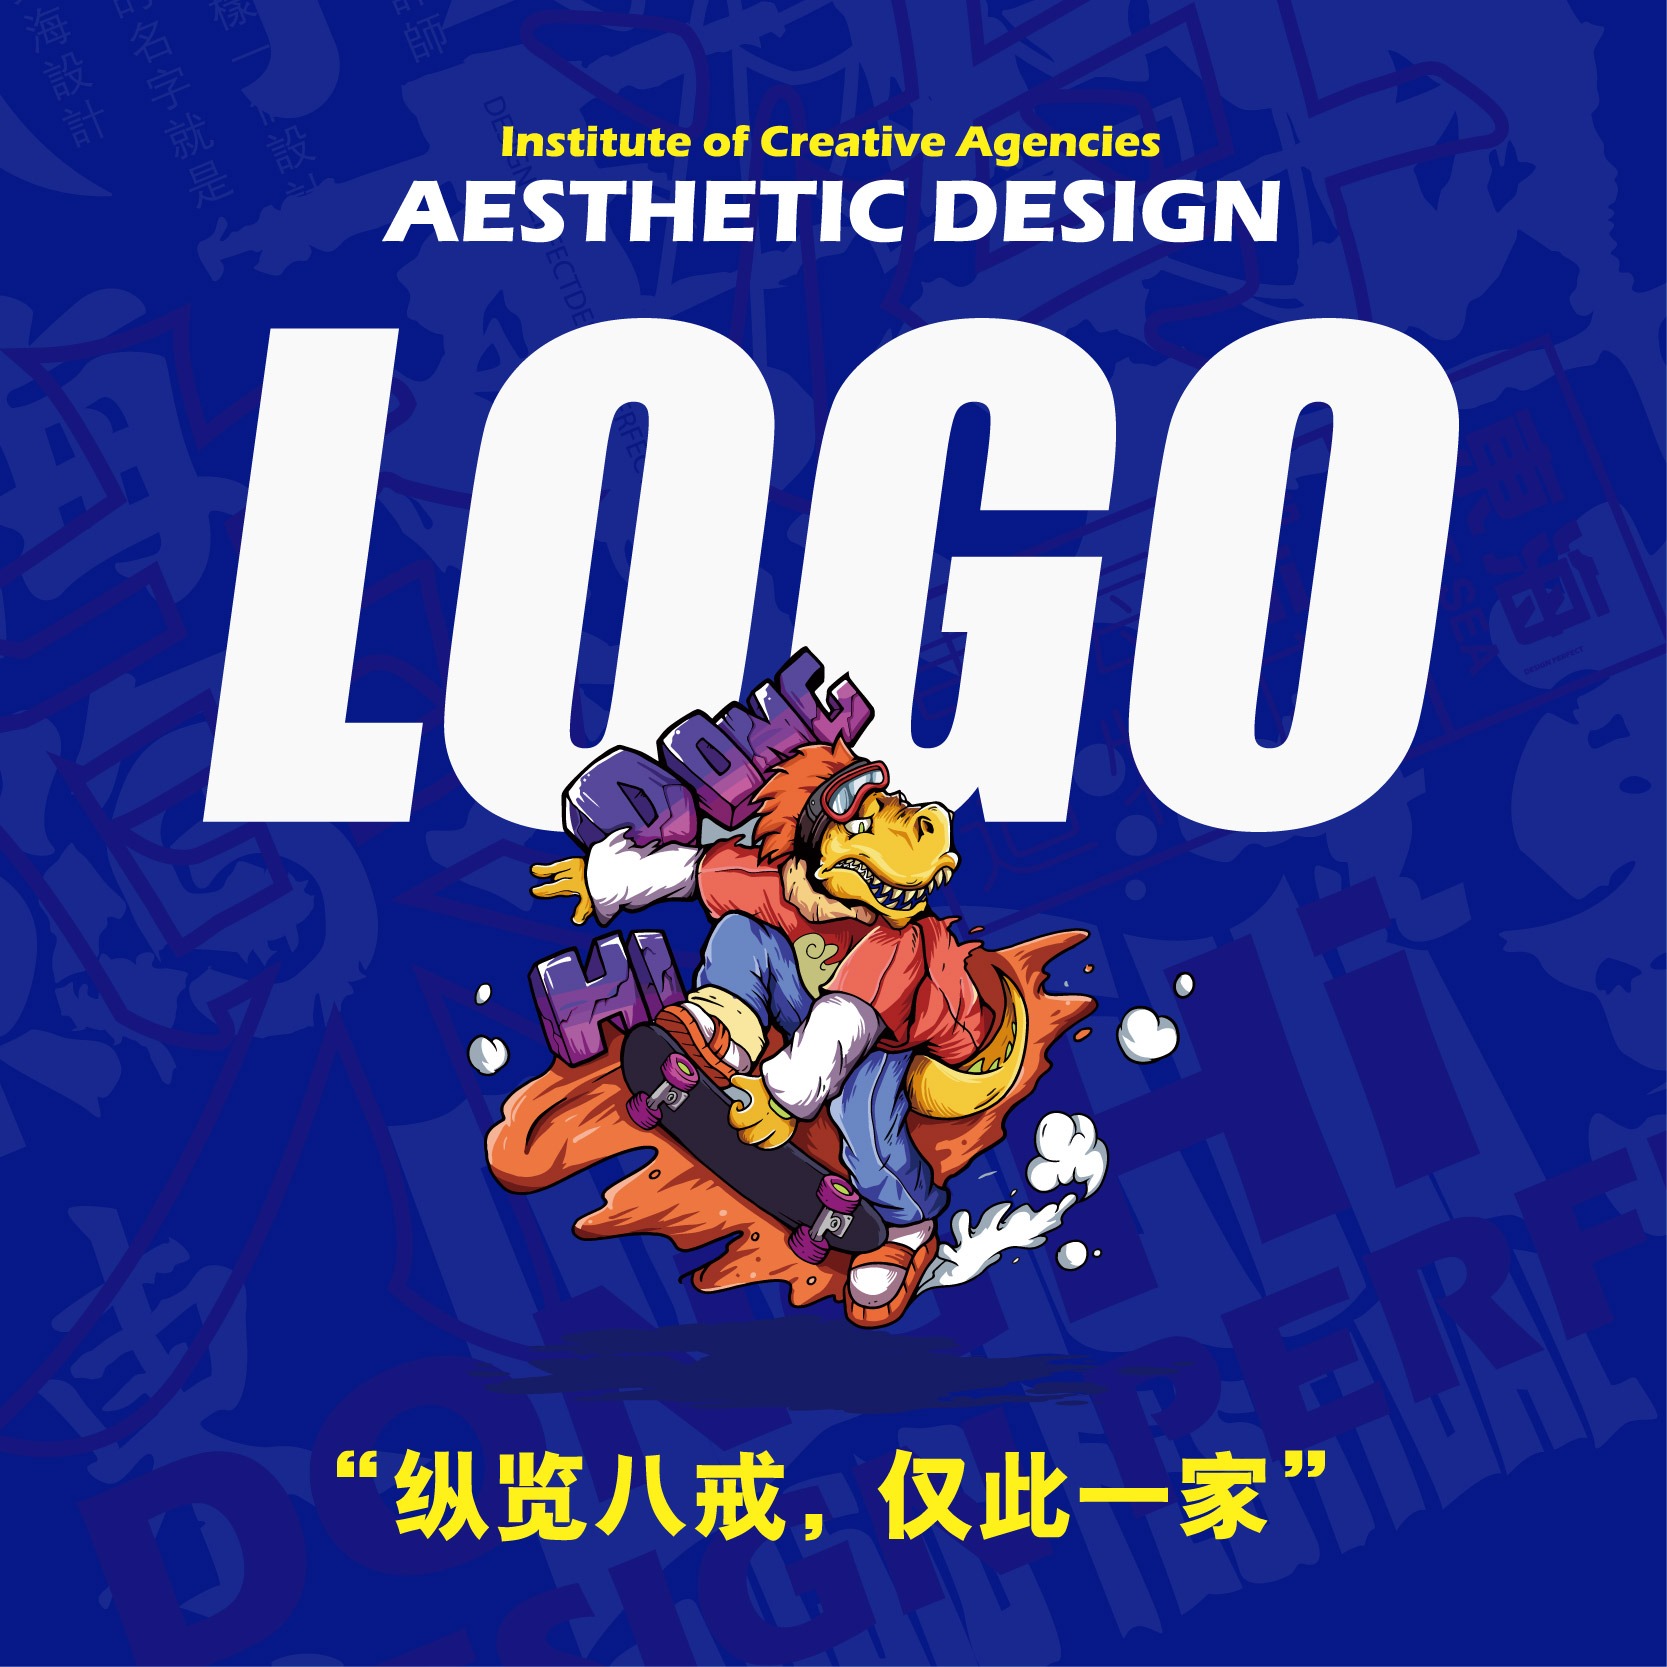 笑口LOGO诊断政府公共服务金融保险品牌logo设计商标设计